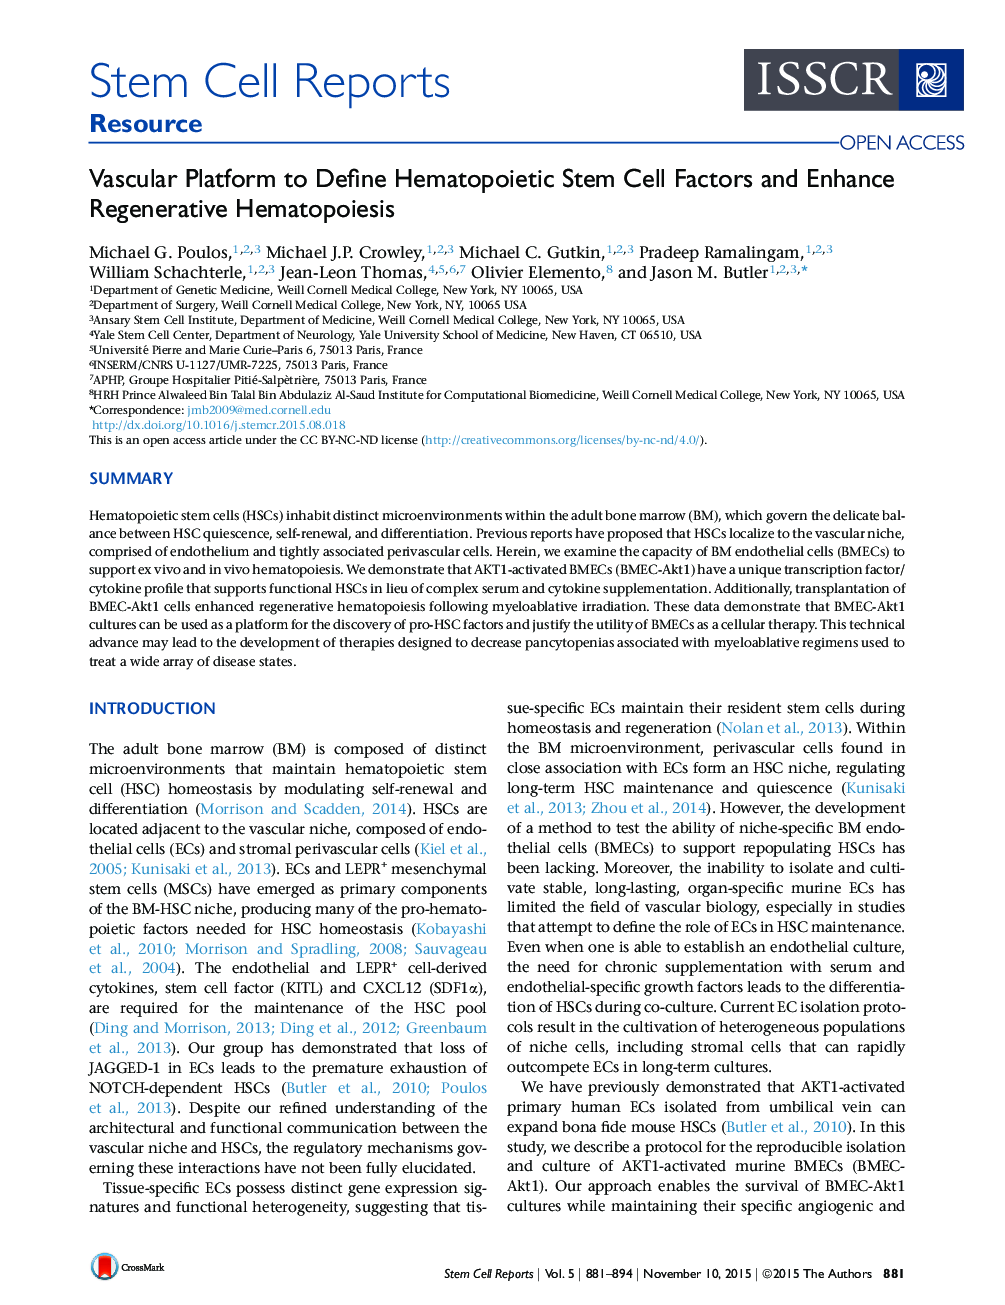 بستر عروقی برای تعریف عاملهای سلول های بنیادی هماتوپوئیت و بهبود هماتوپوئیززی مجدد 